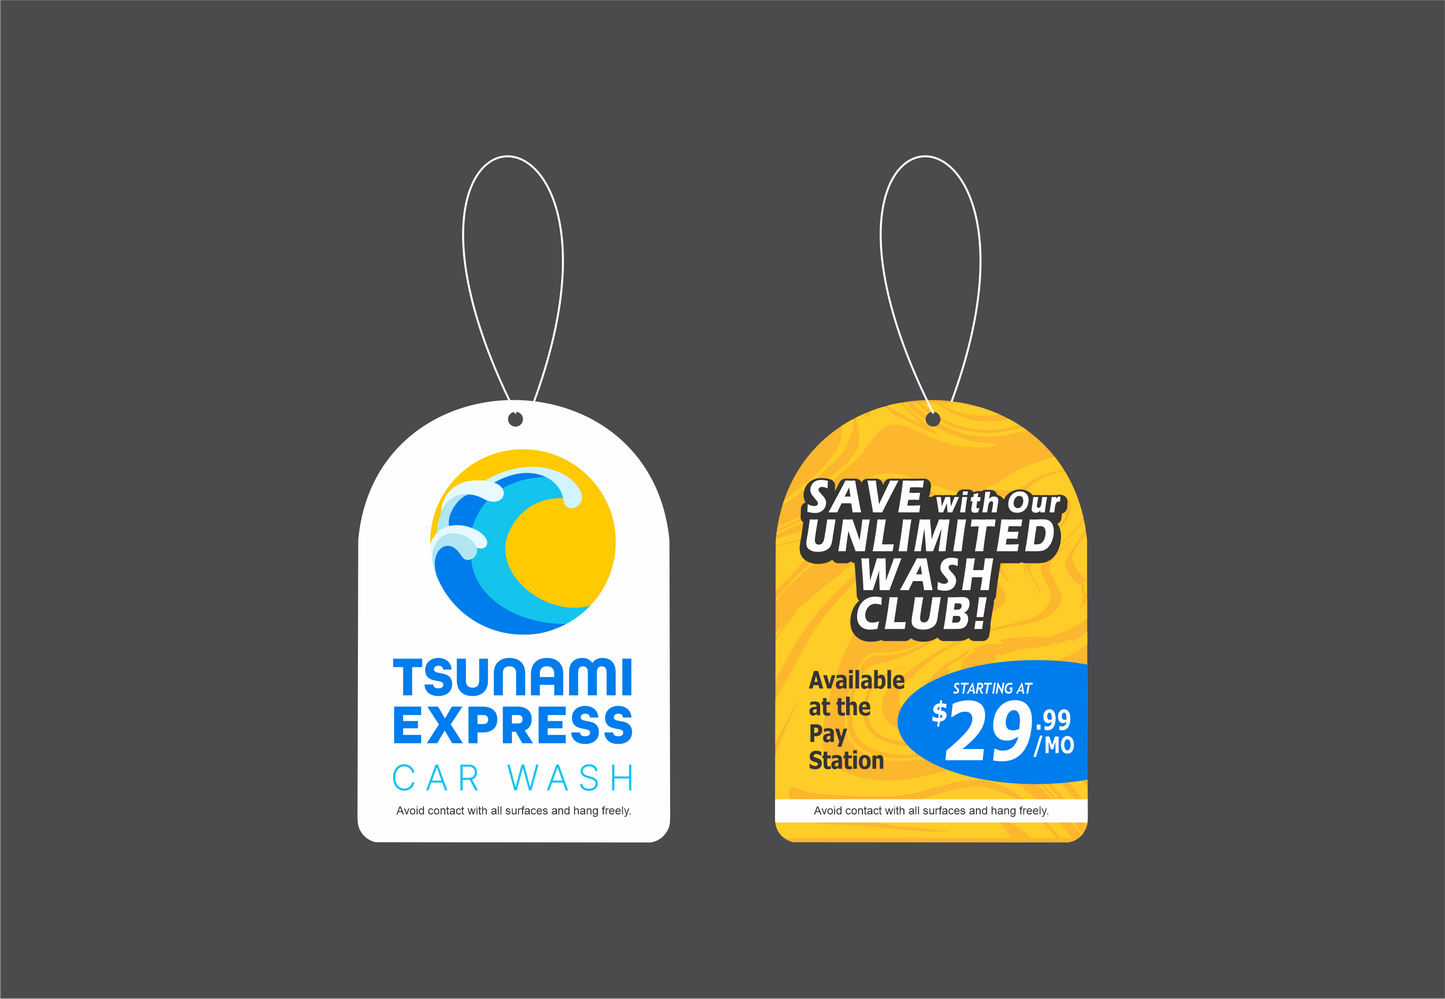 Tsunami Express Car Wash